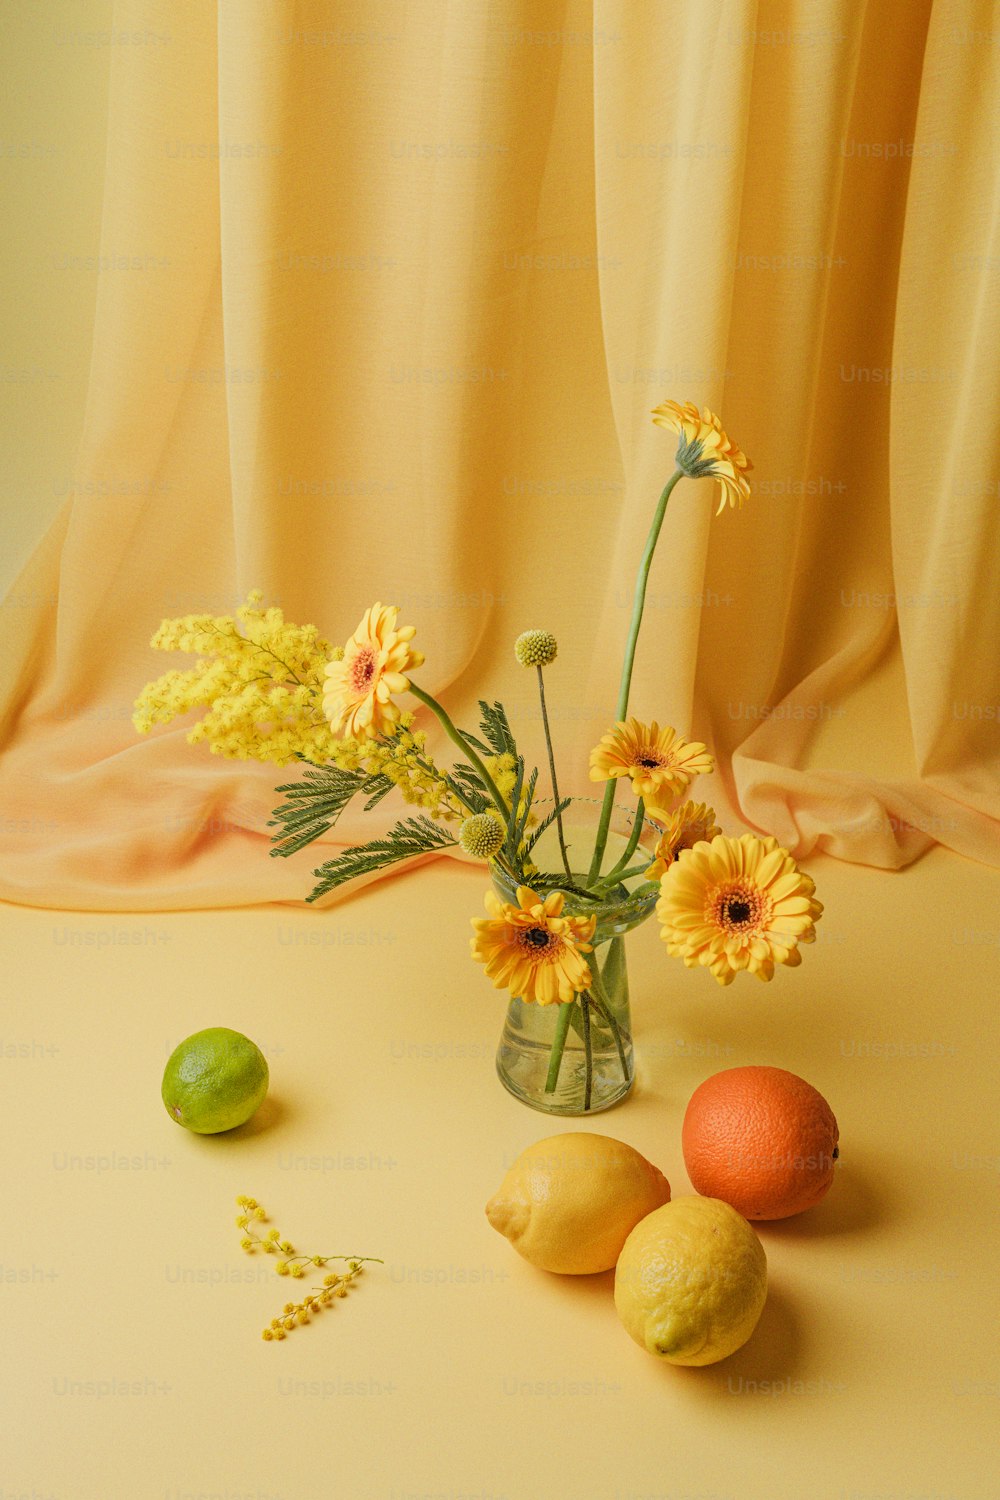 Un vase rempli de fleurs jaunes à côté de citrons